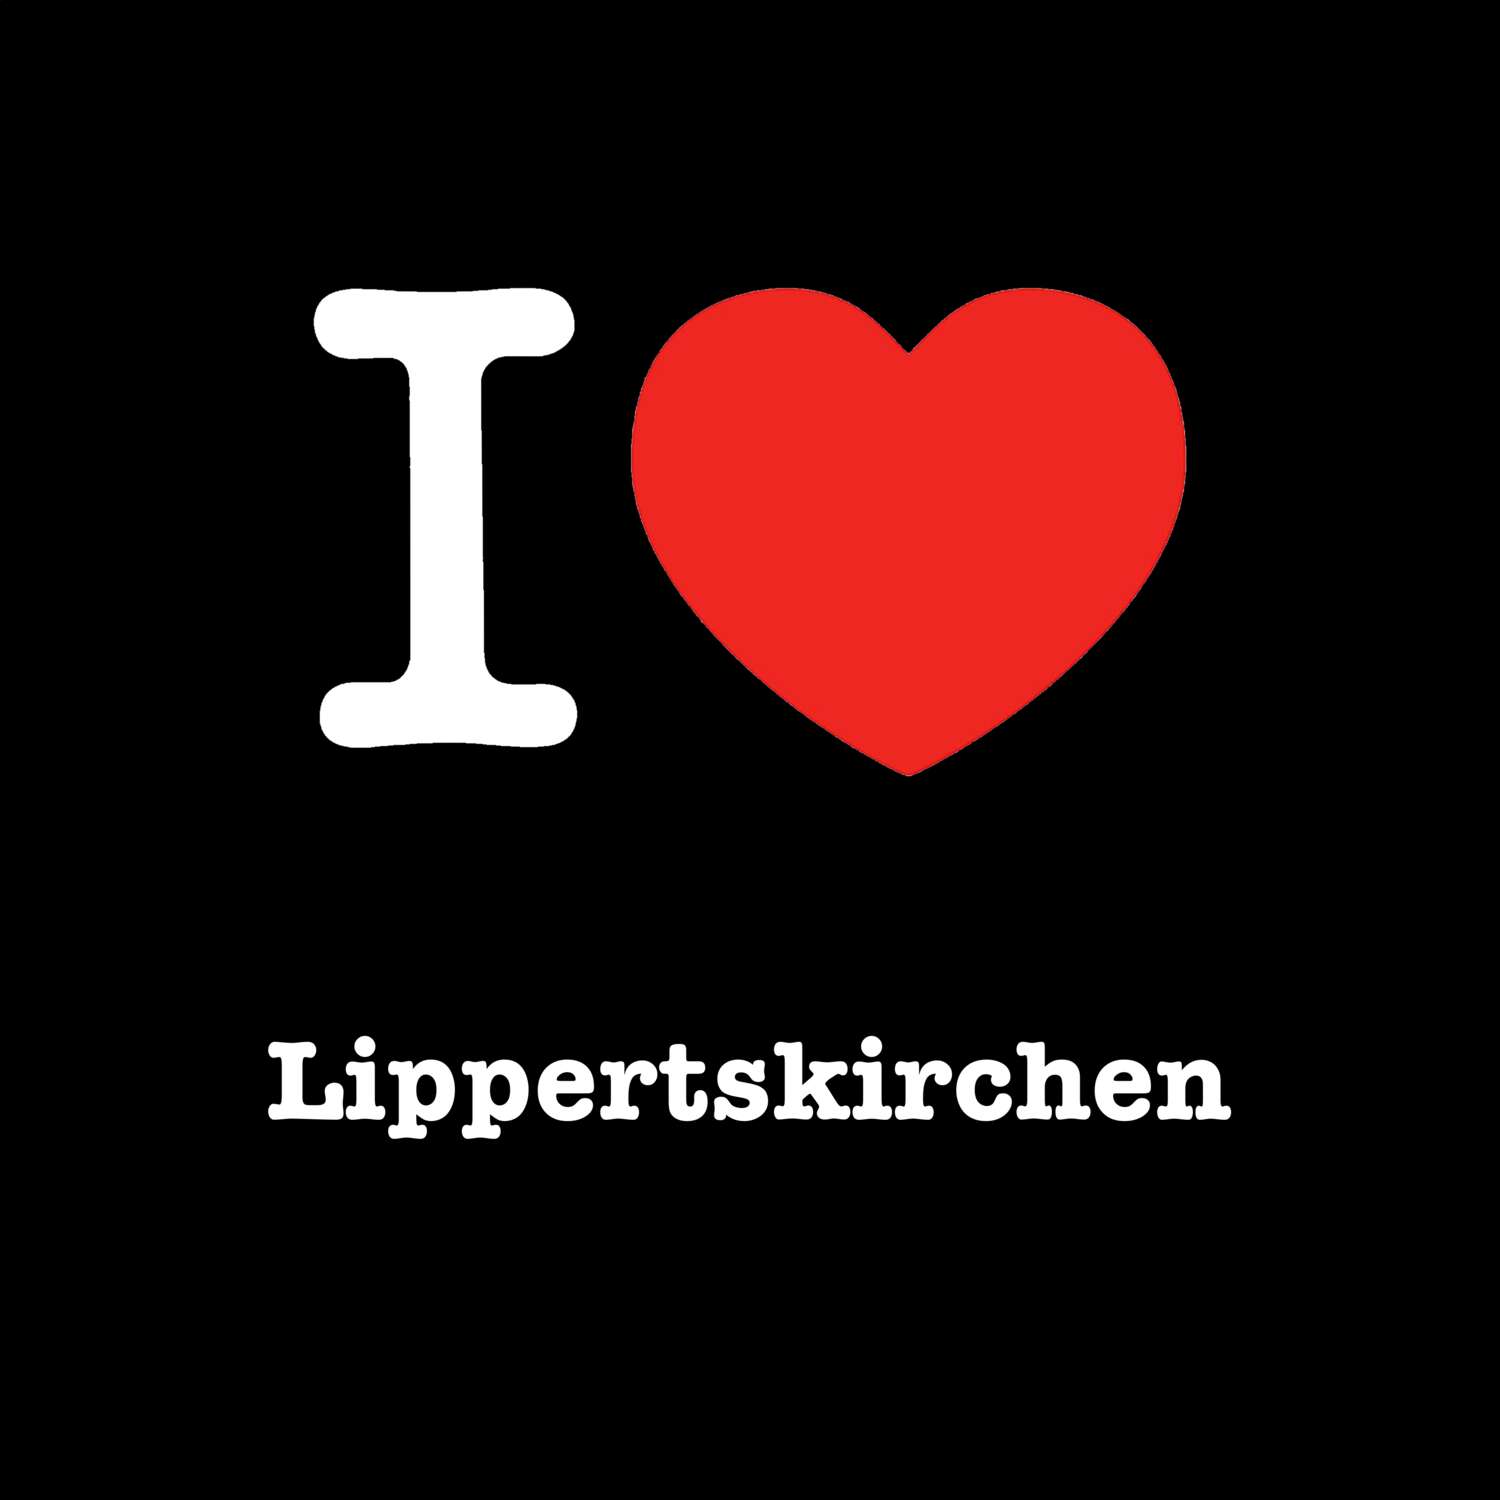 Lippertskirchen T-Shirt »I love«